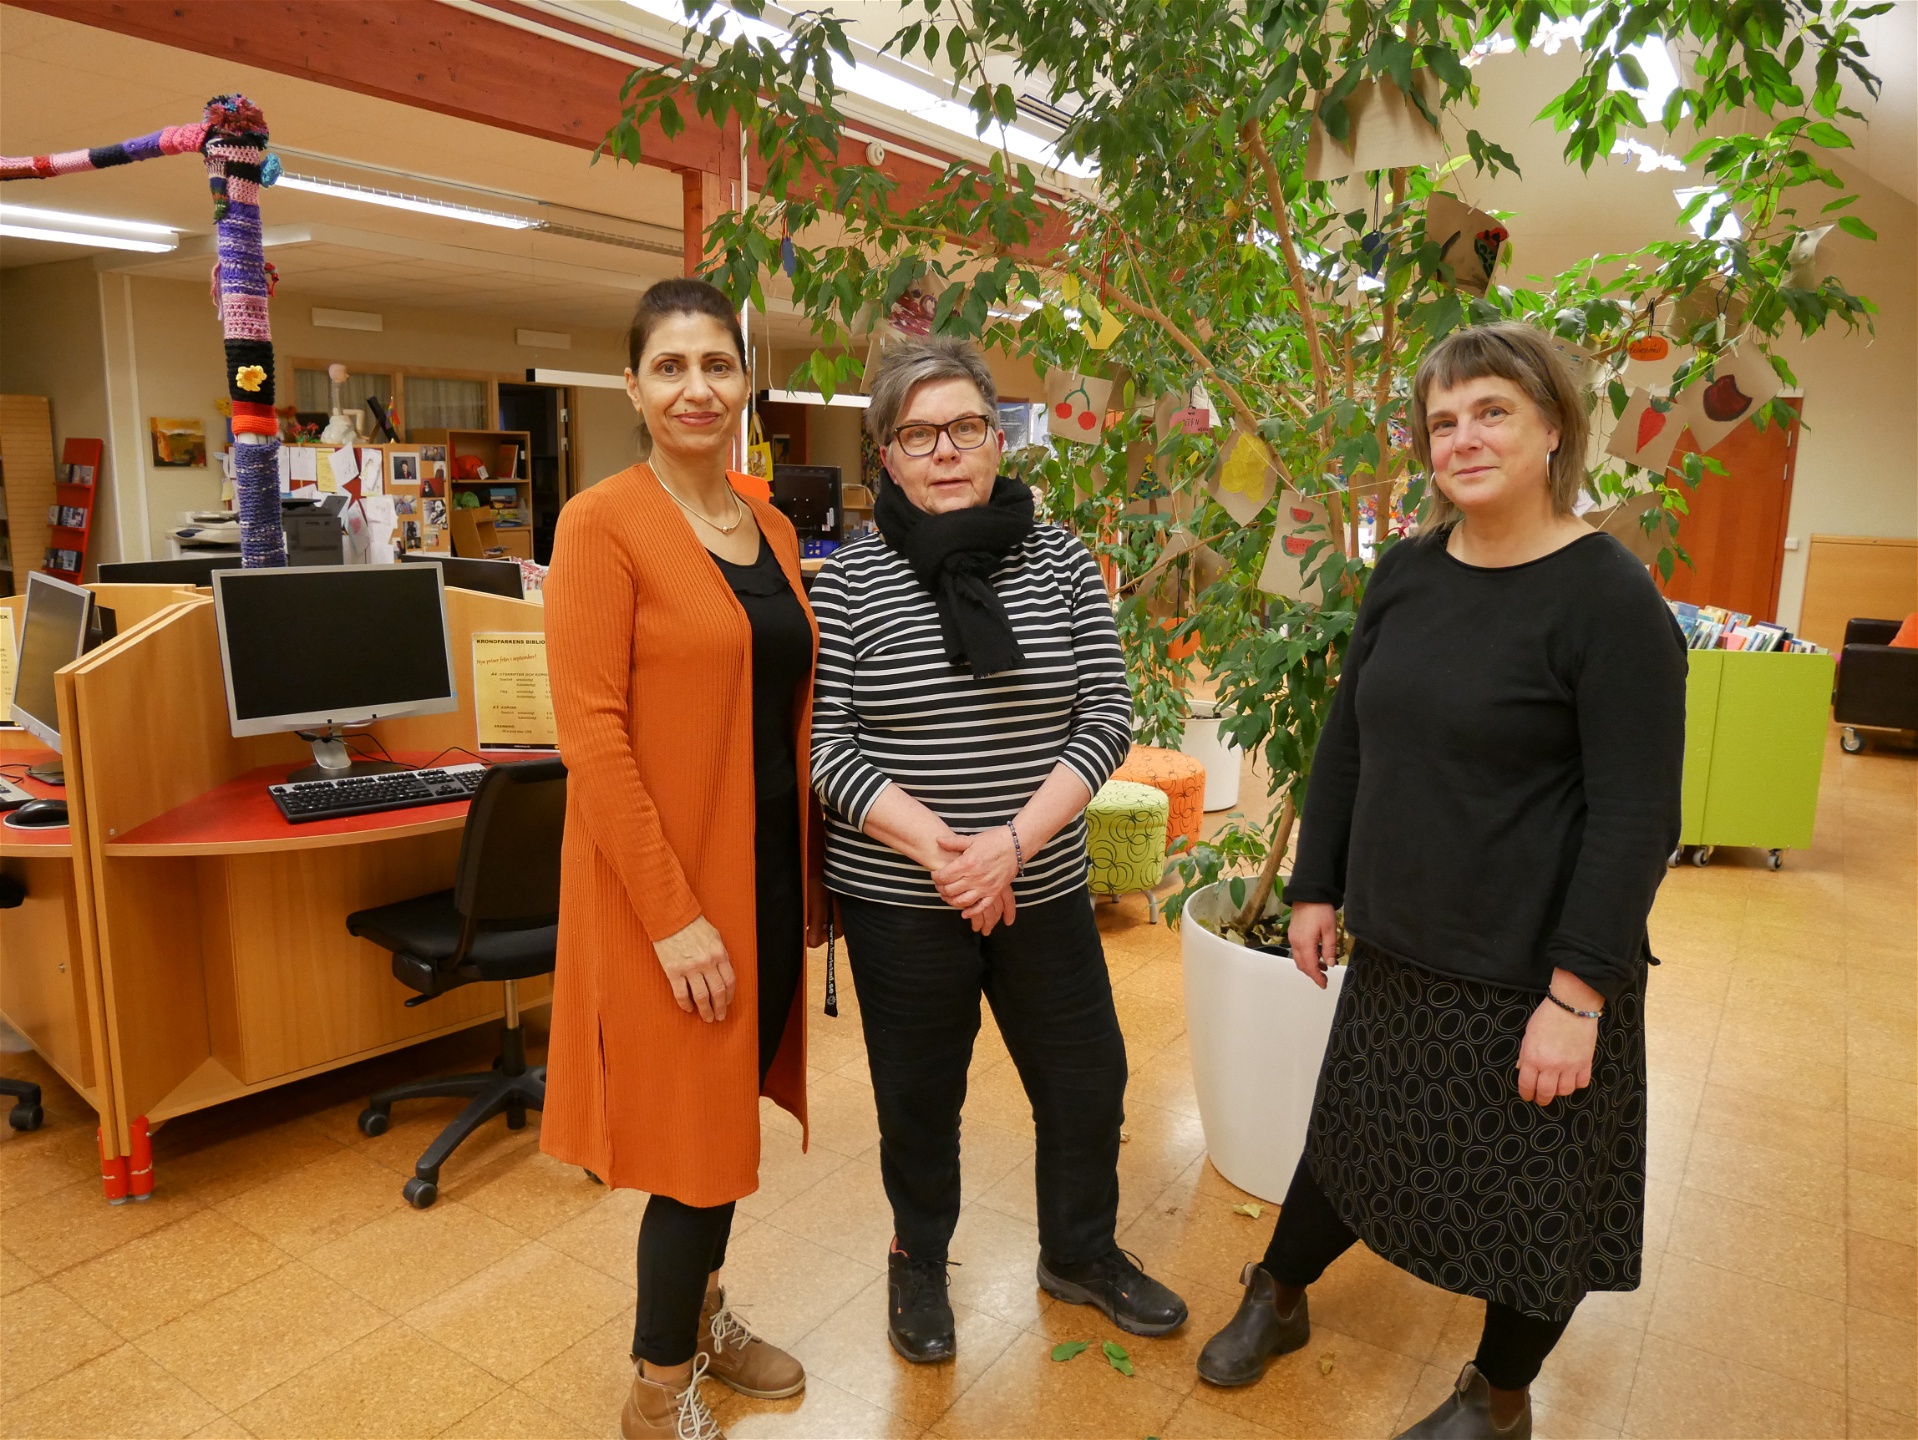 Noorihe Halimi på biblioteket i Kronoparken där hon har sitt kontor. Här till­sammans med kollegorna Ewa Lena Eriksson (i mitten) och Ann Skagerling (t h).